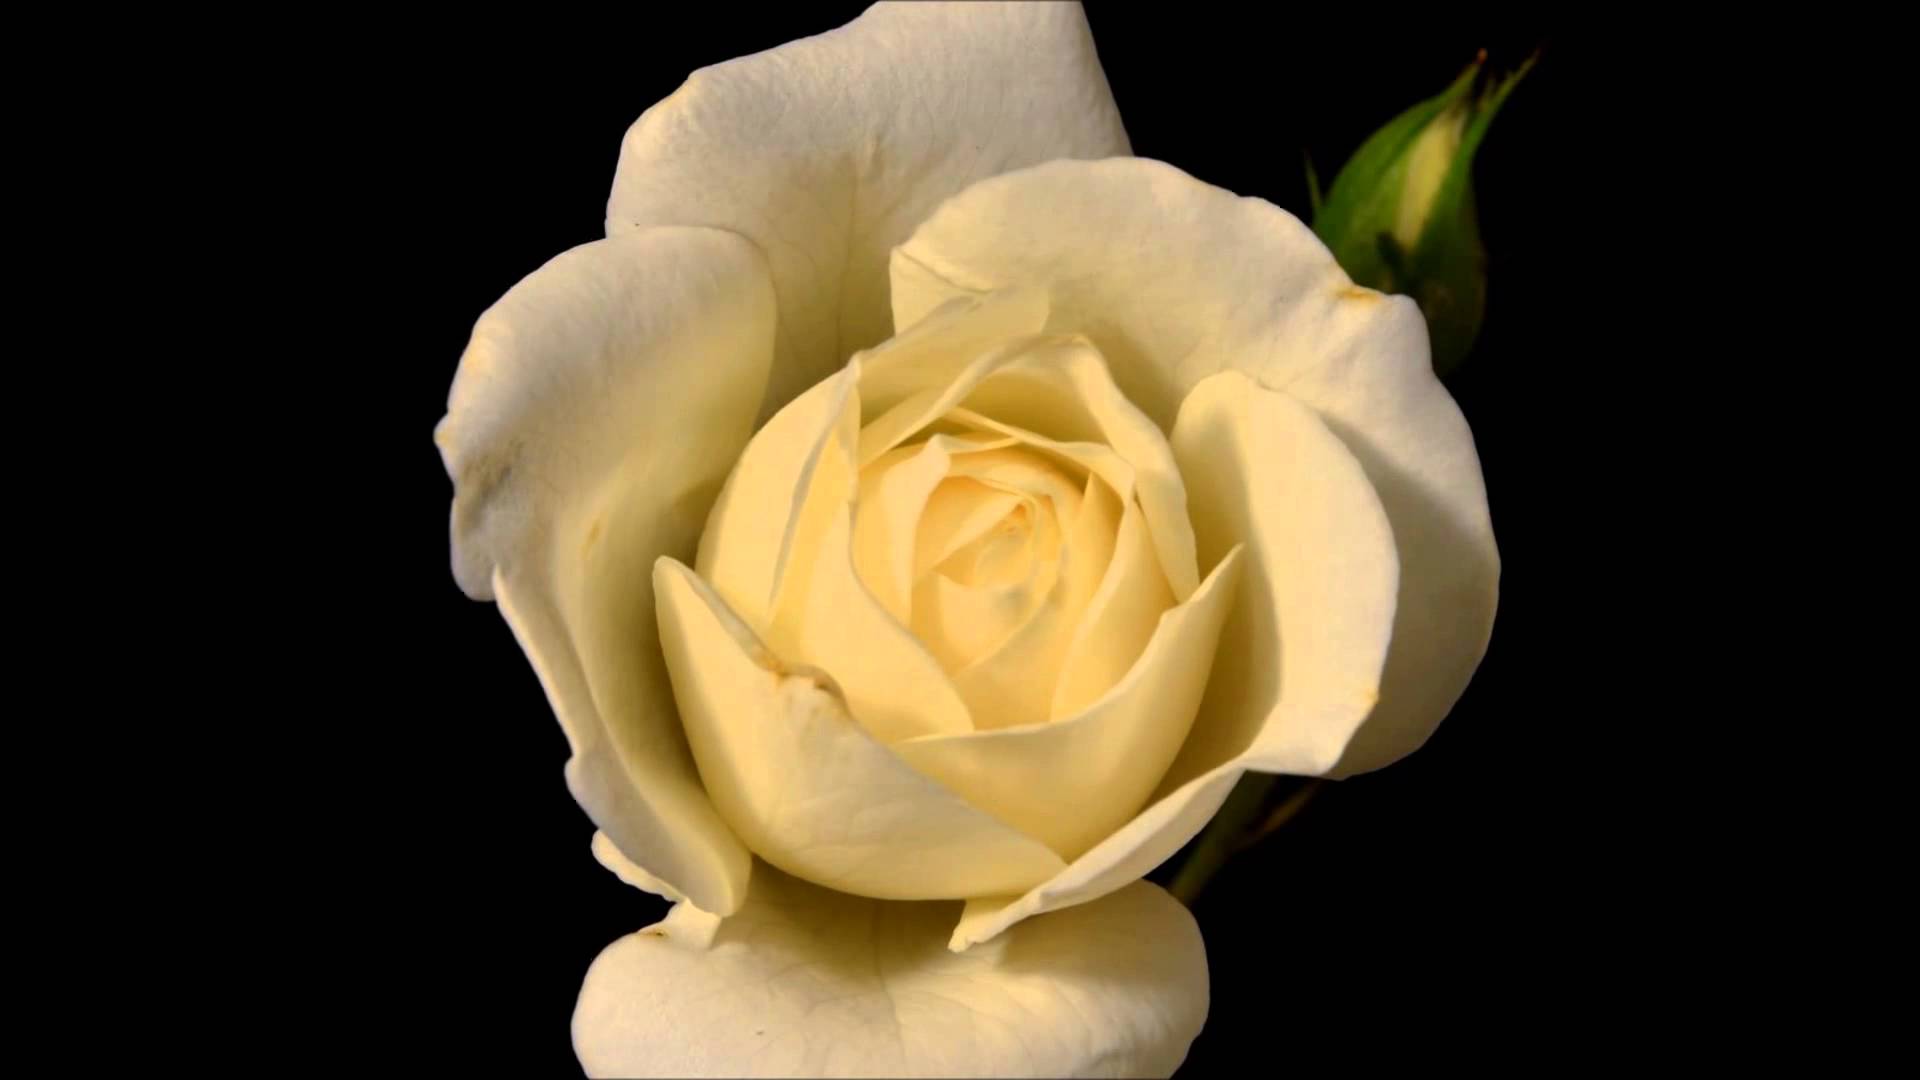 Blooming White Rose Flower - Timelapse - YouTube